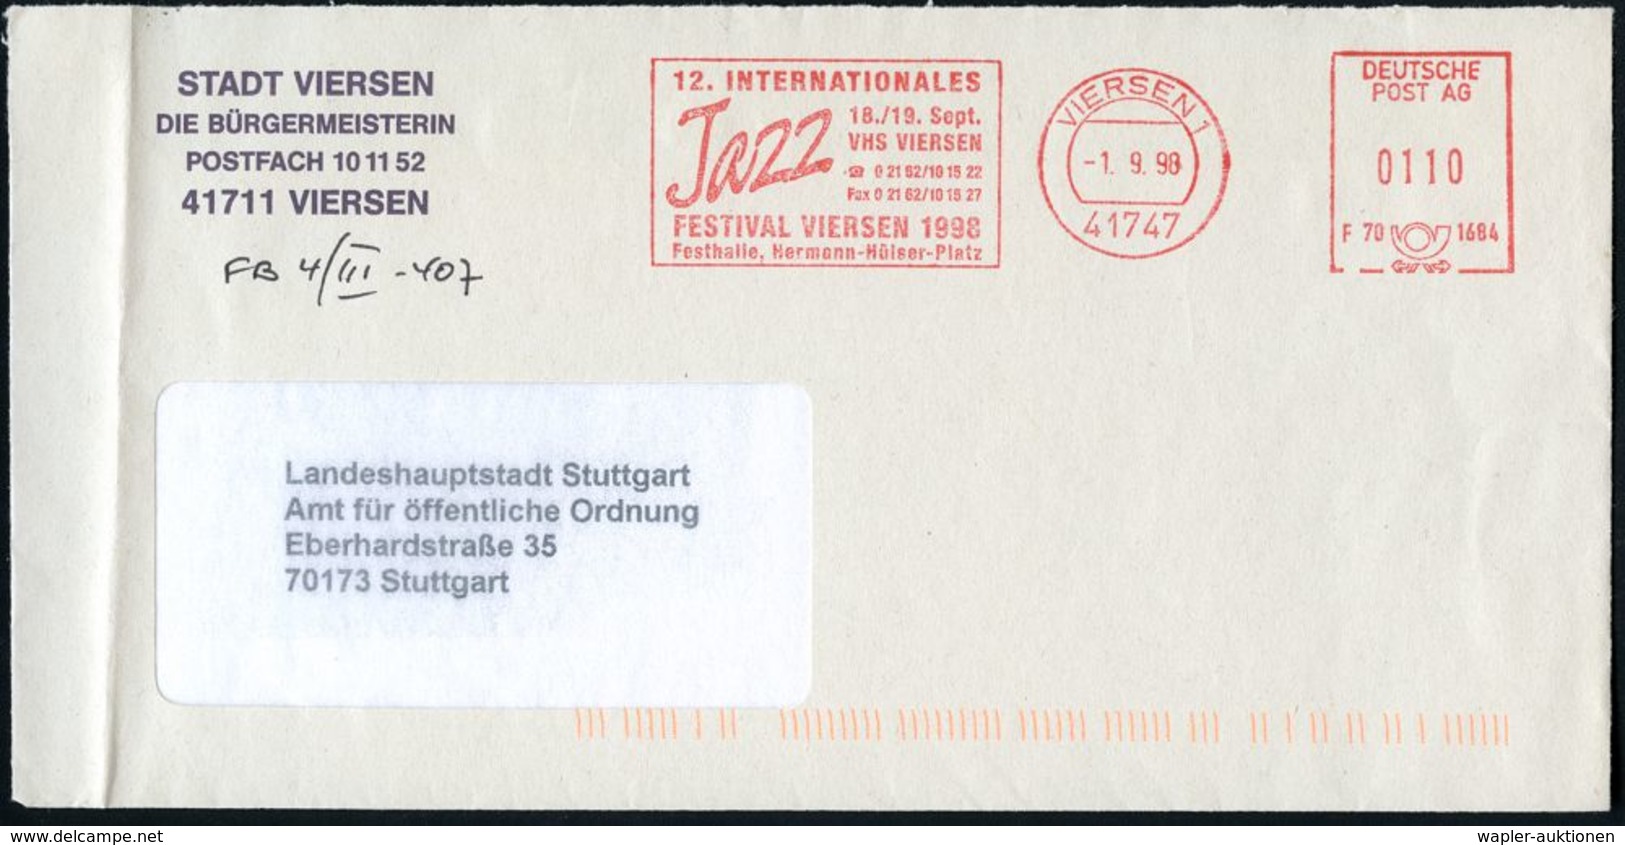 41747 VIERSEN 1/ F70 1684/ 12.INTERNAT./ Jazz/ ..FESTIVAL VIERSEN 1982.. 1998 (1.9.) Seltener AFS-Typ "DEUTSCHE POST AG" - Musica